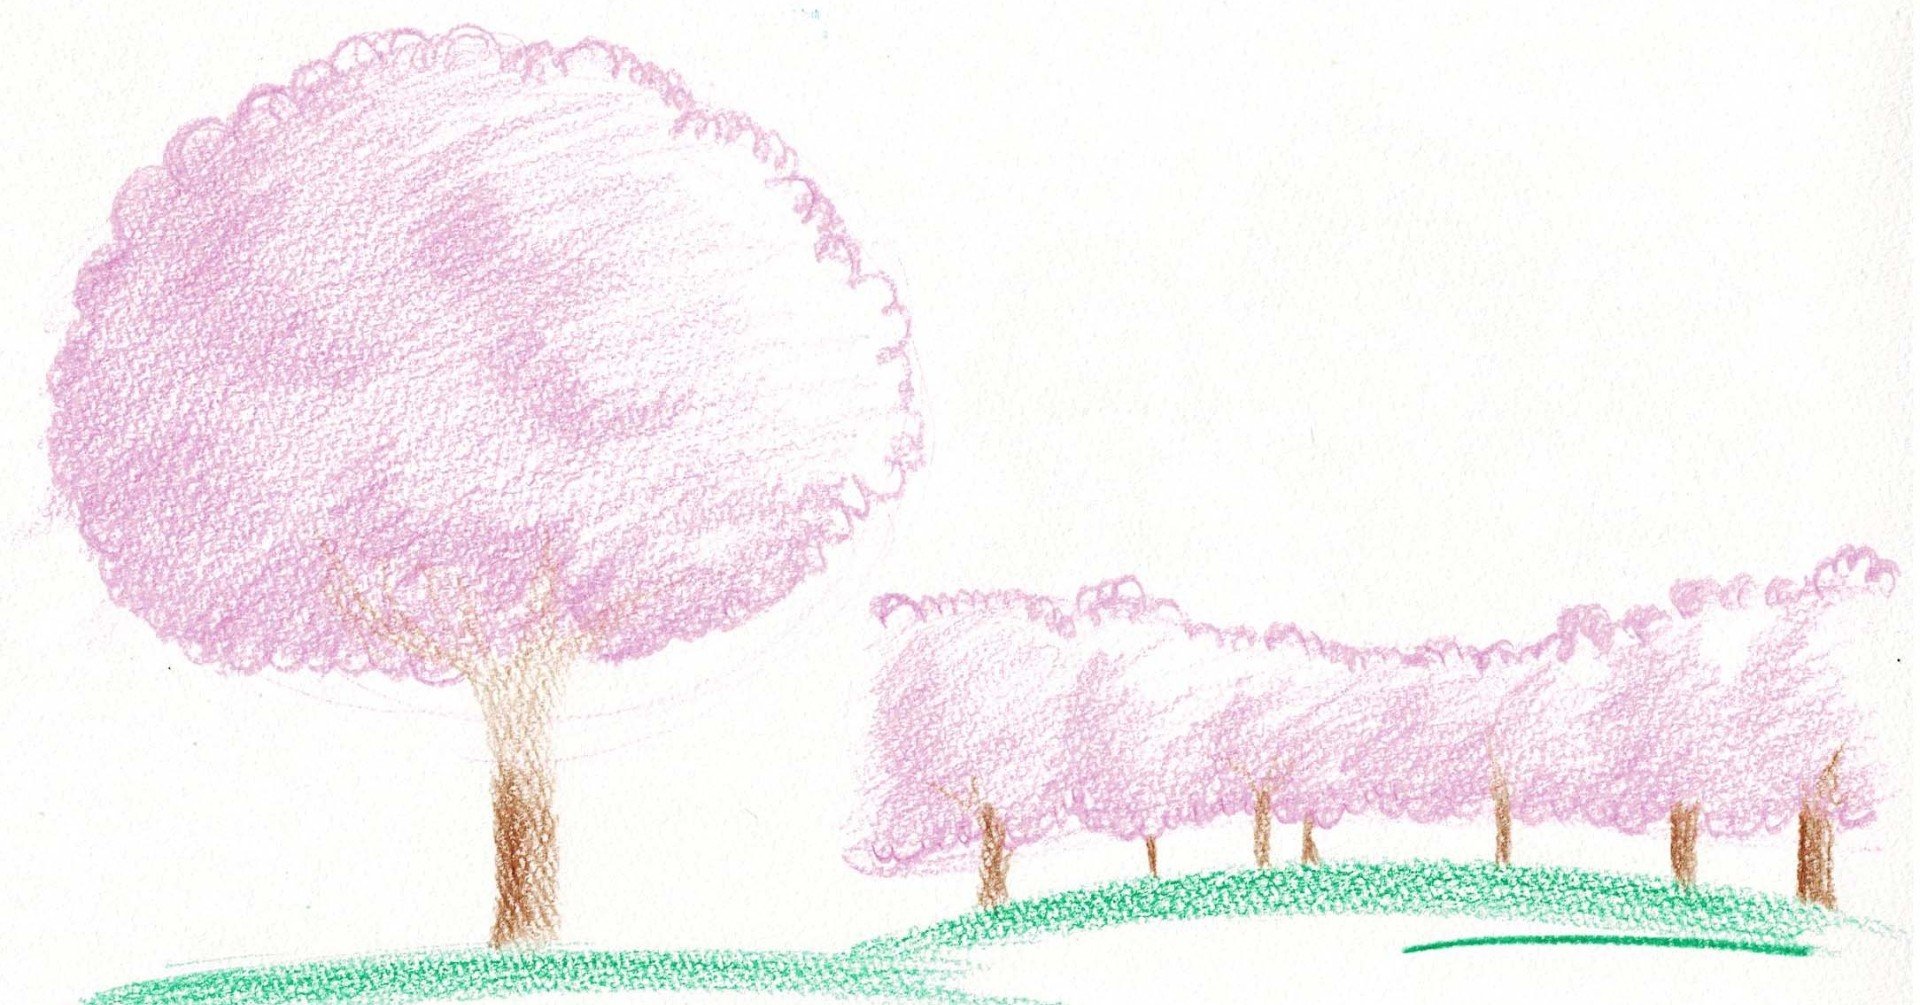 色鉛筆 シンプルな1本桜と桜並木を描く 木も可 つくえのらくがき研究 Note